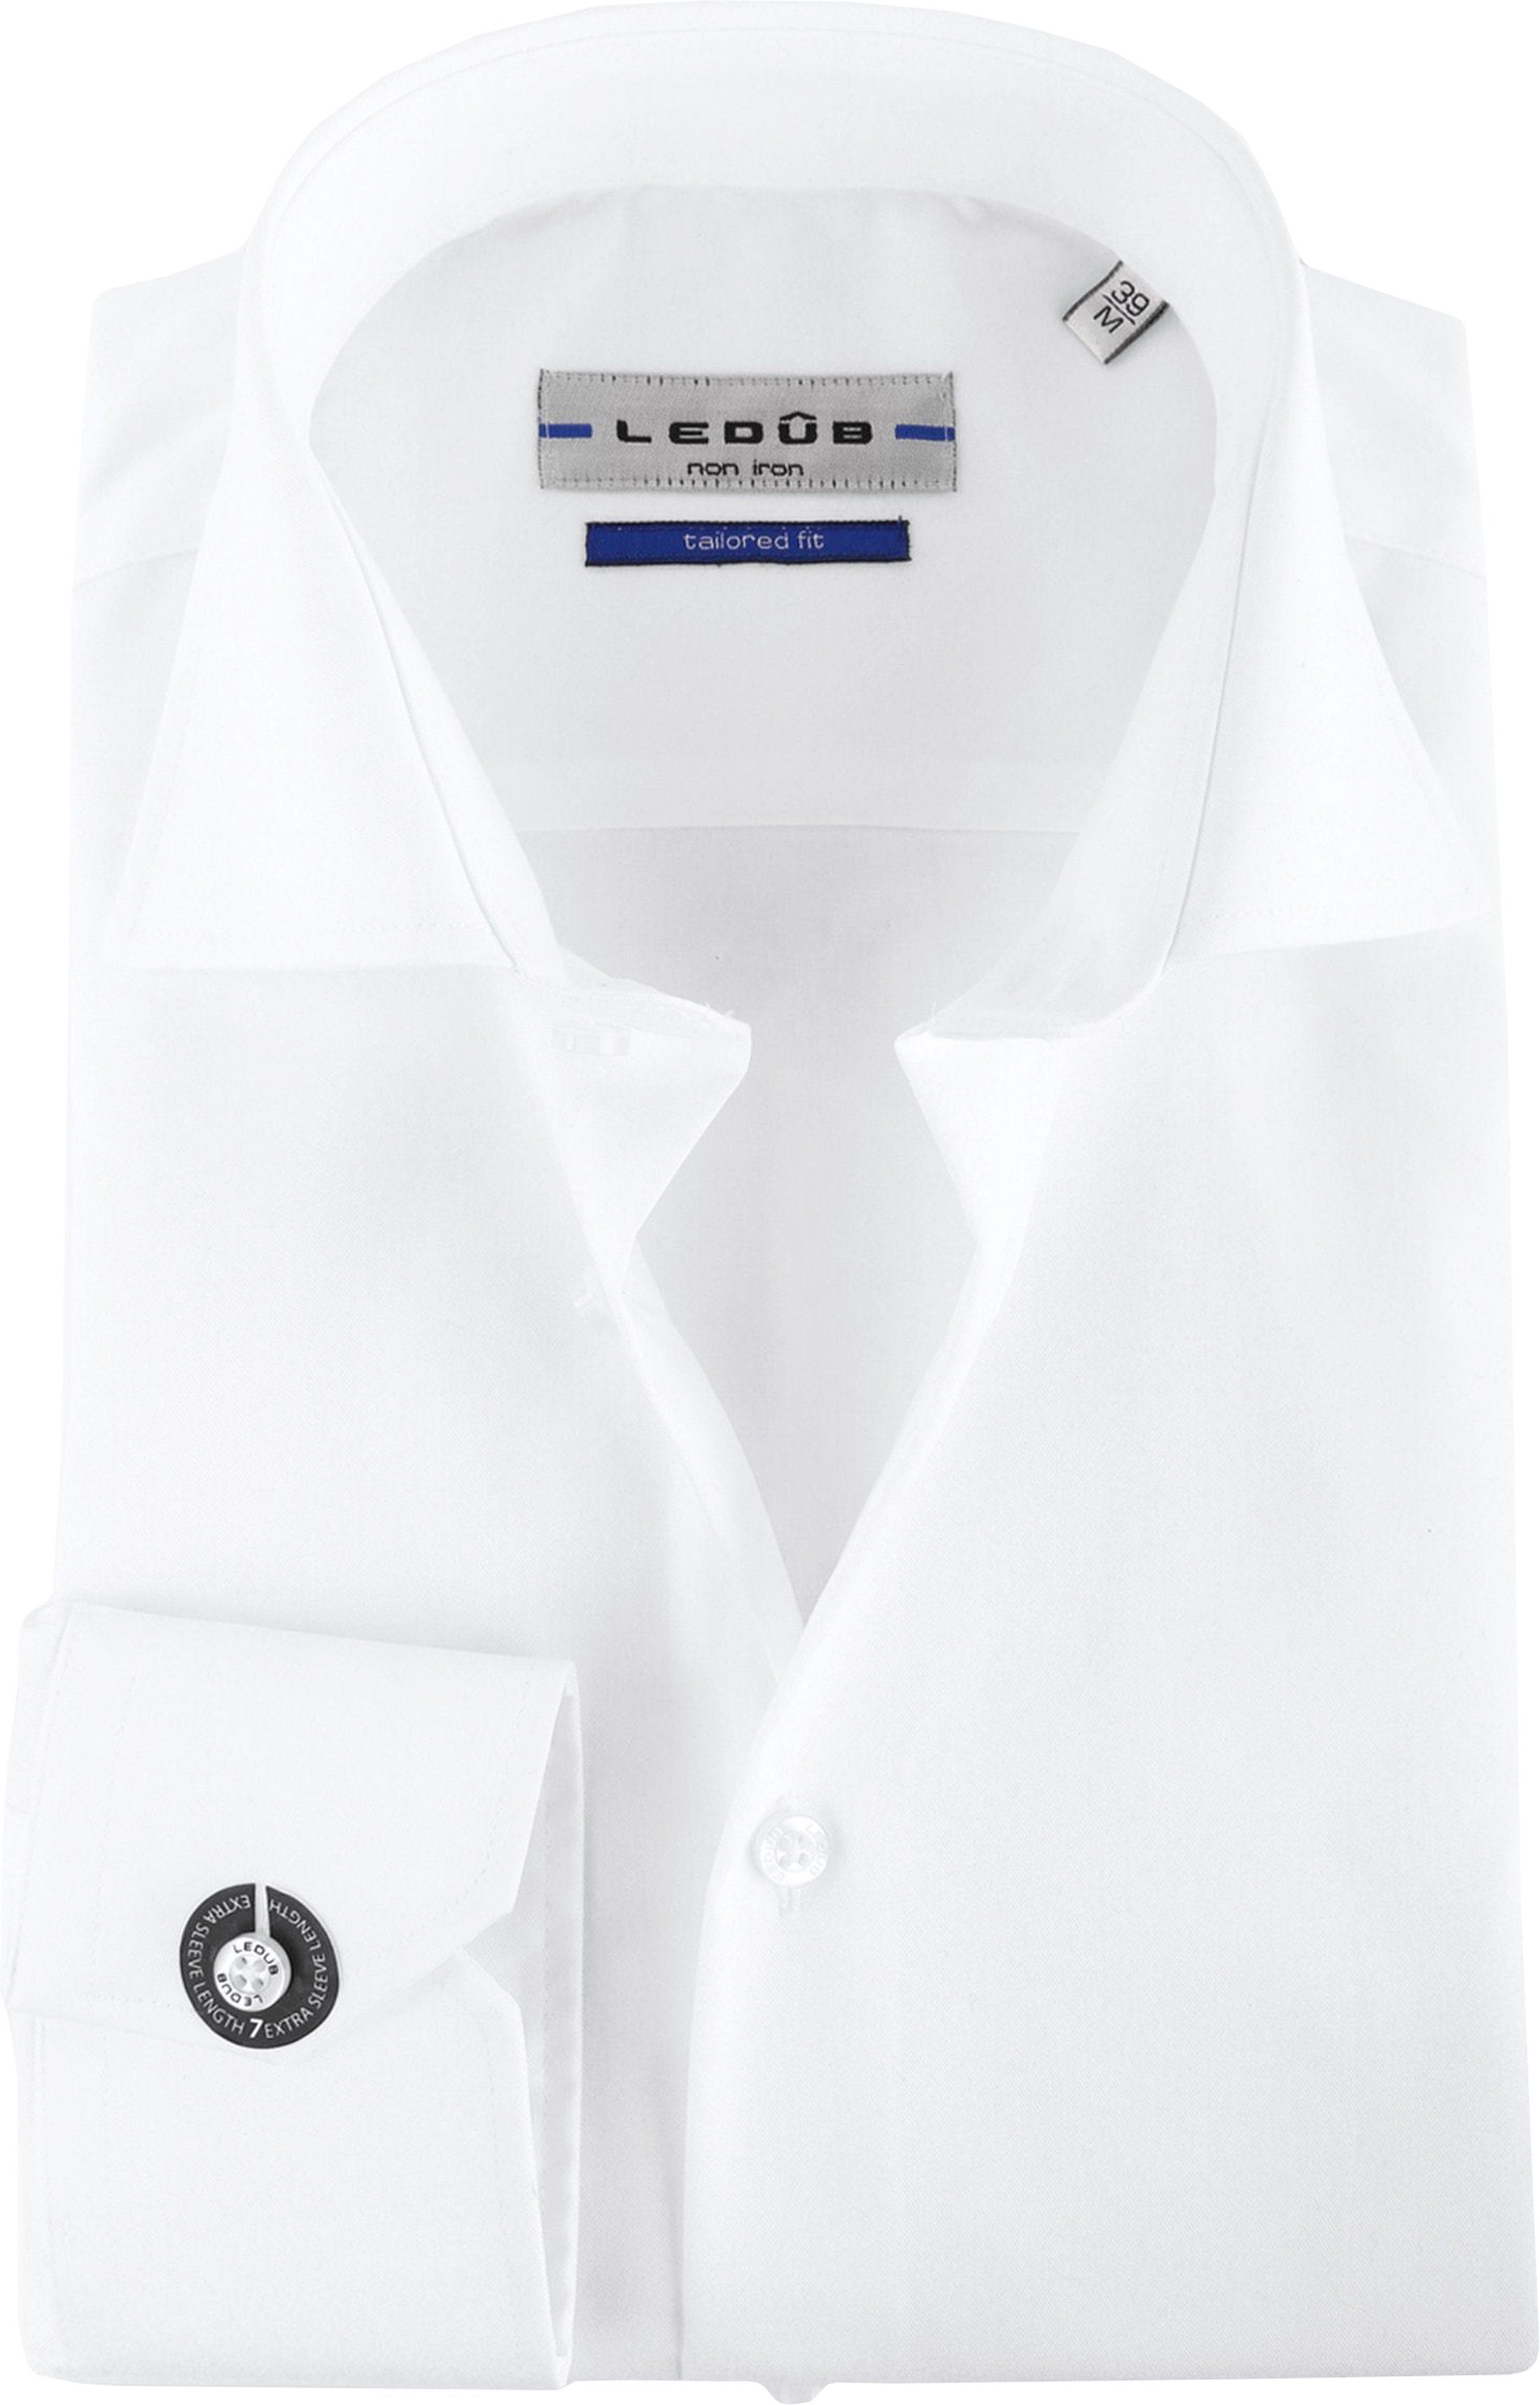 Ledub Non Iron SL7 Shirt White size 15